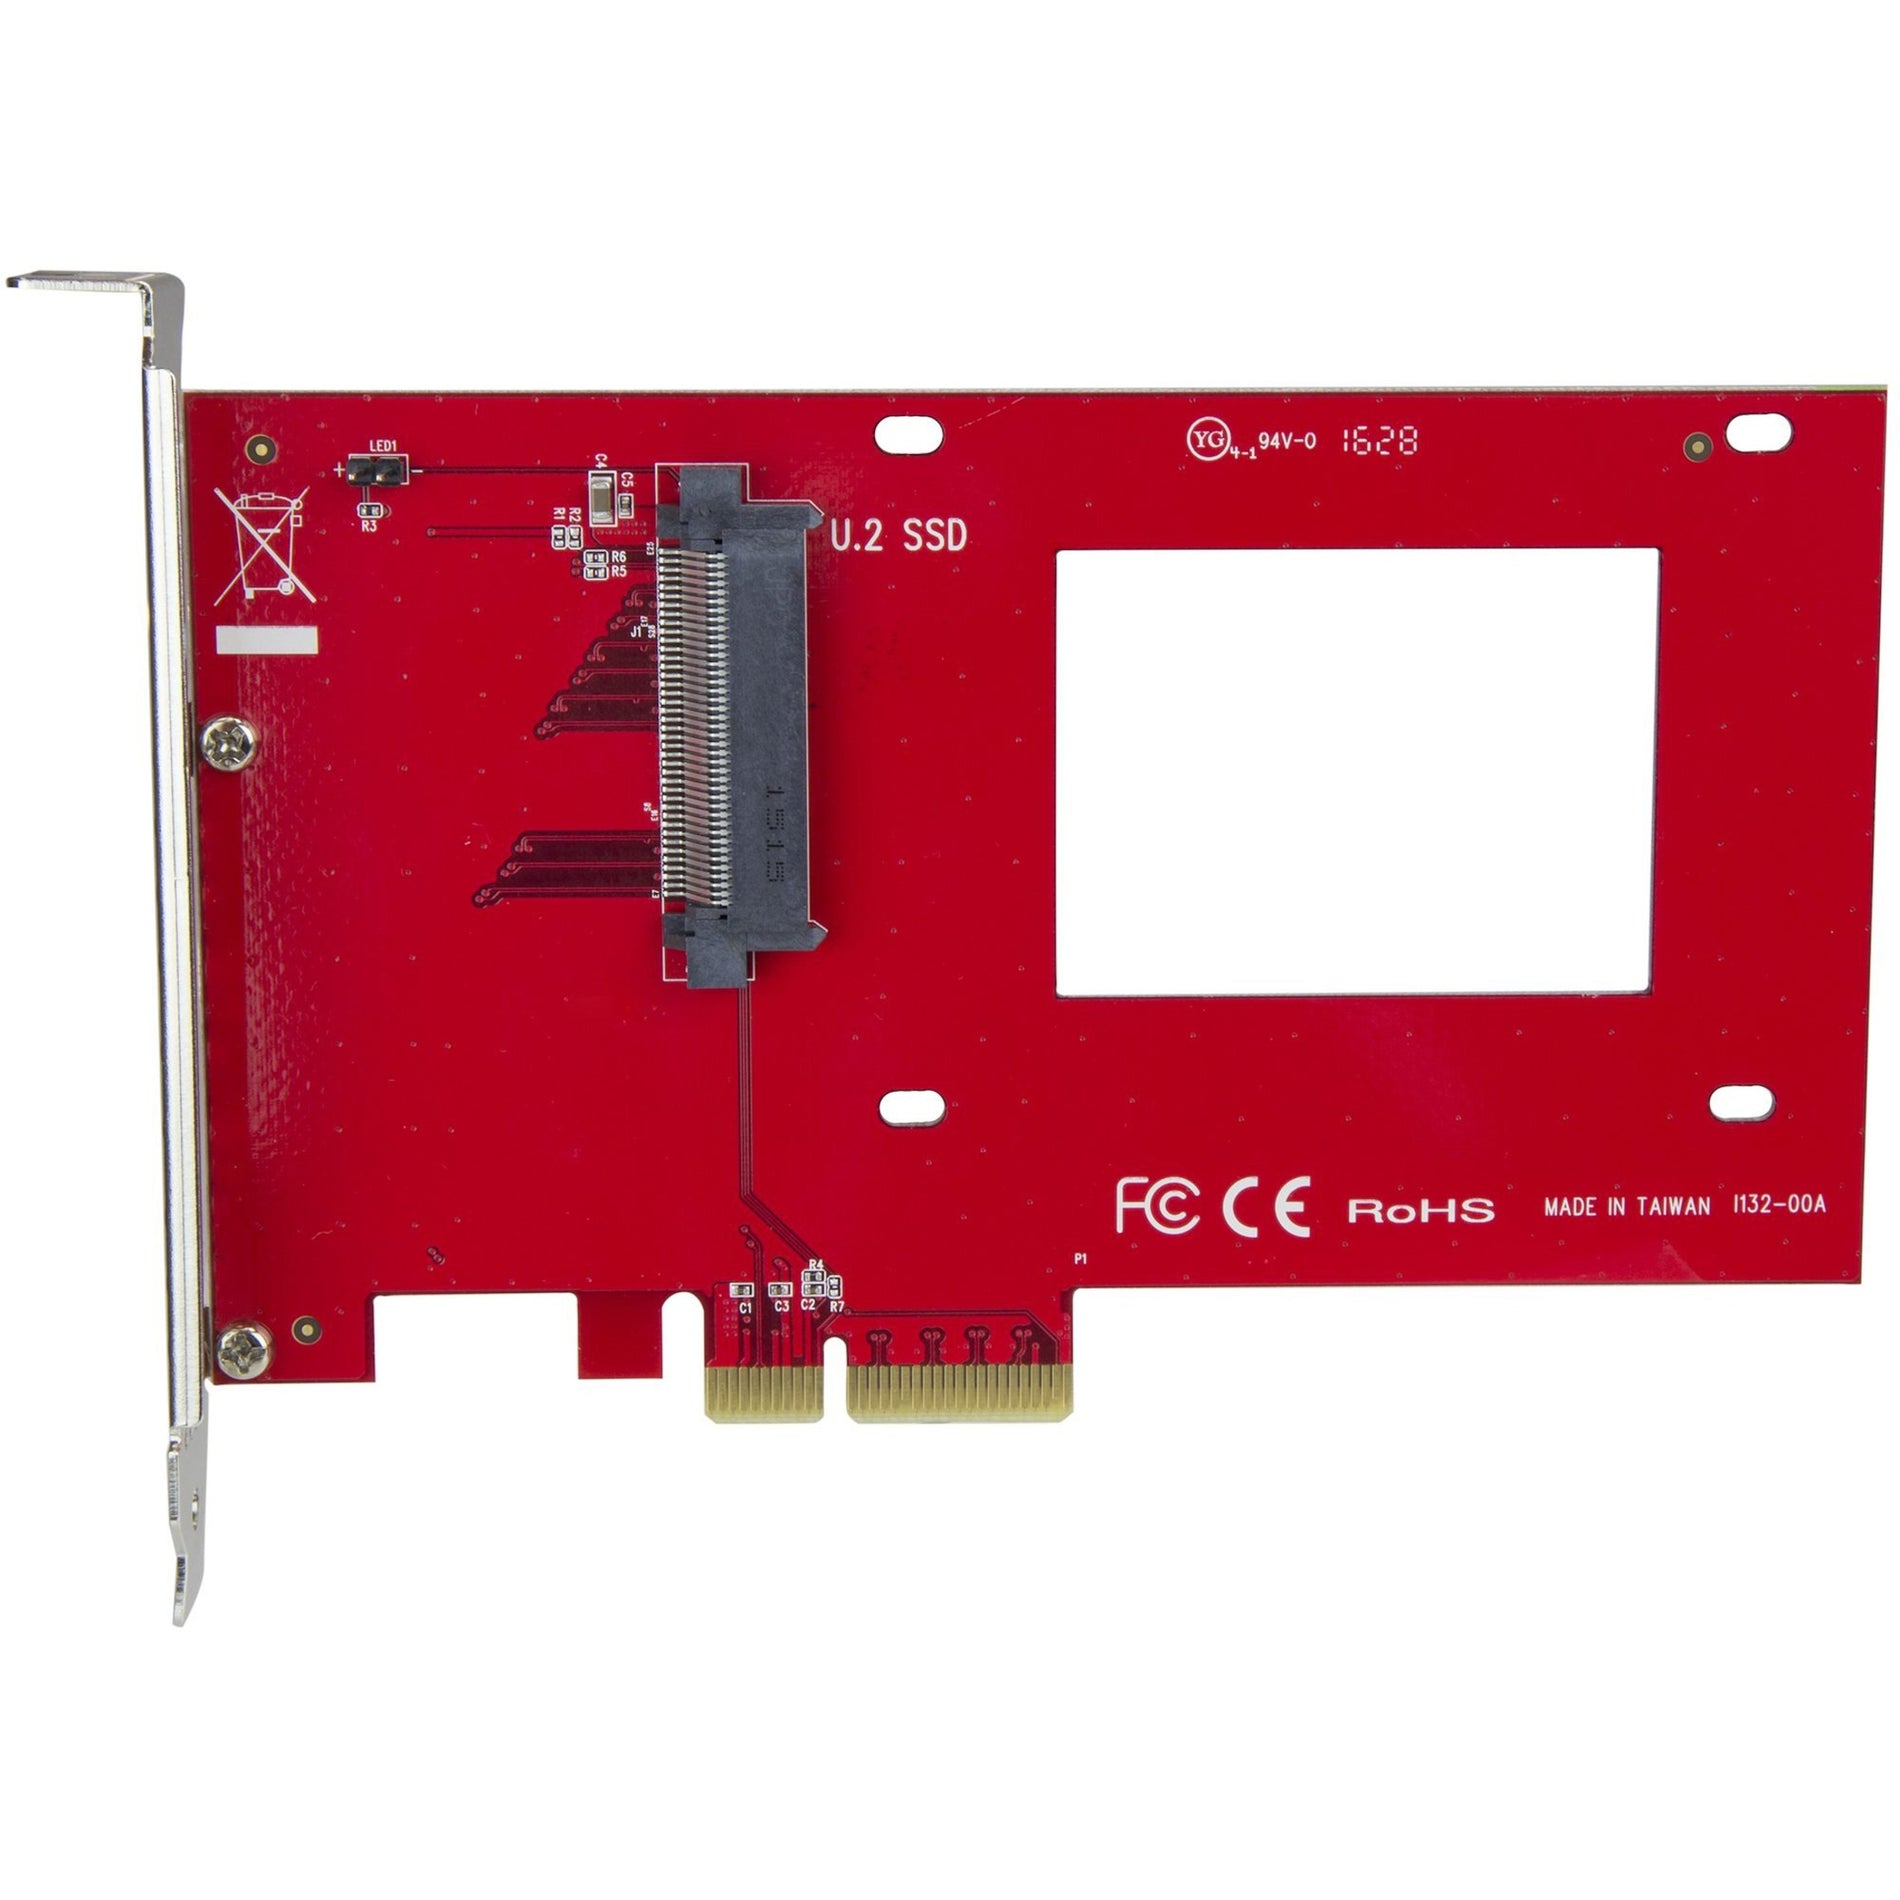 StarTech.com PEX4SFF8639 U.2 to PCIe Adapter for 2.5" U.2 NVMe SSD, SFF-8639, x4 PCI Express 3.0